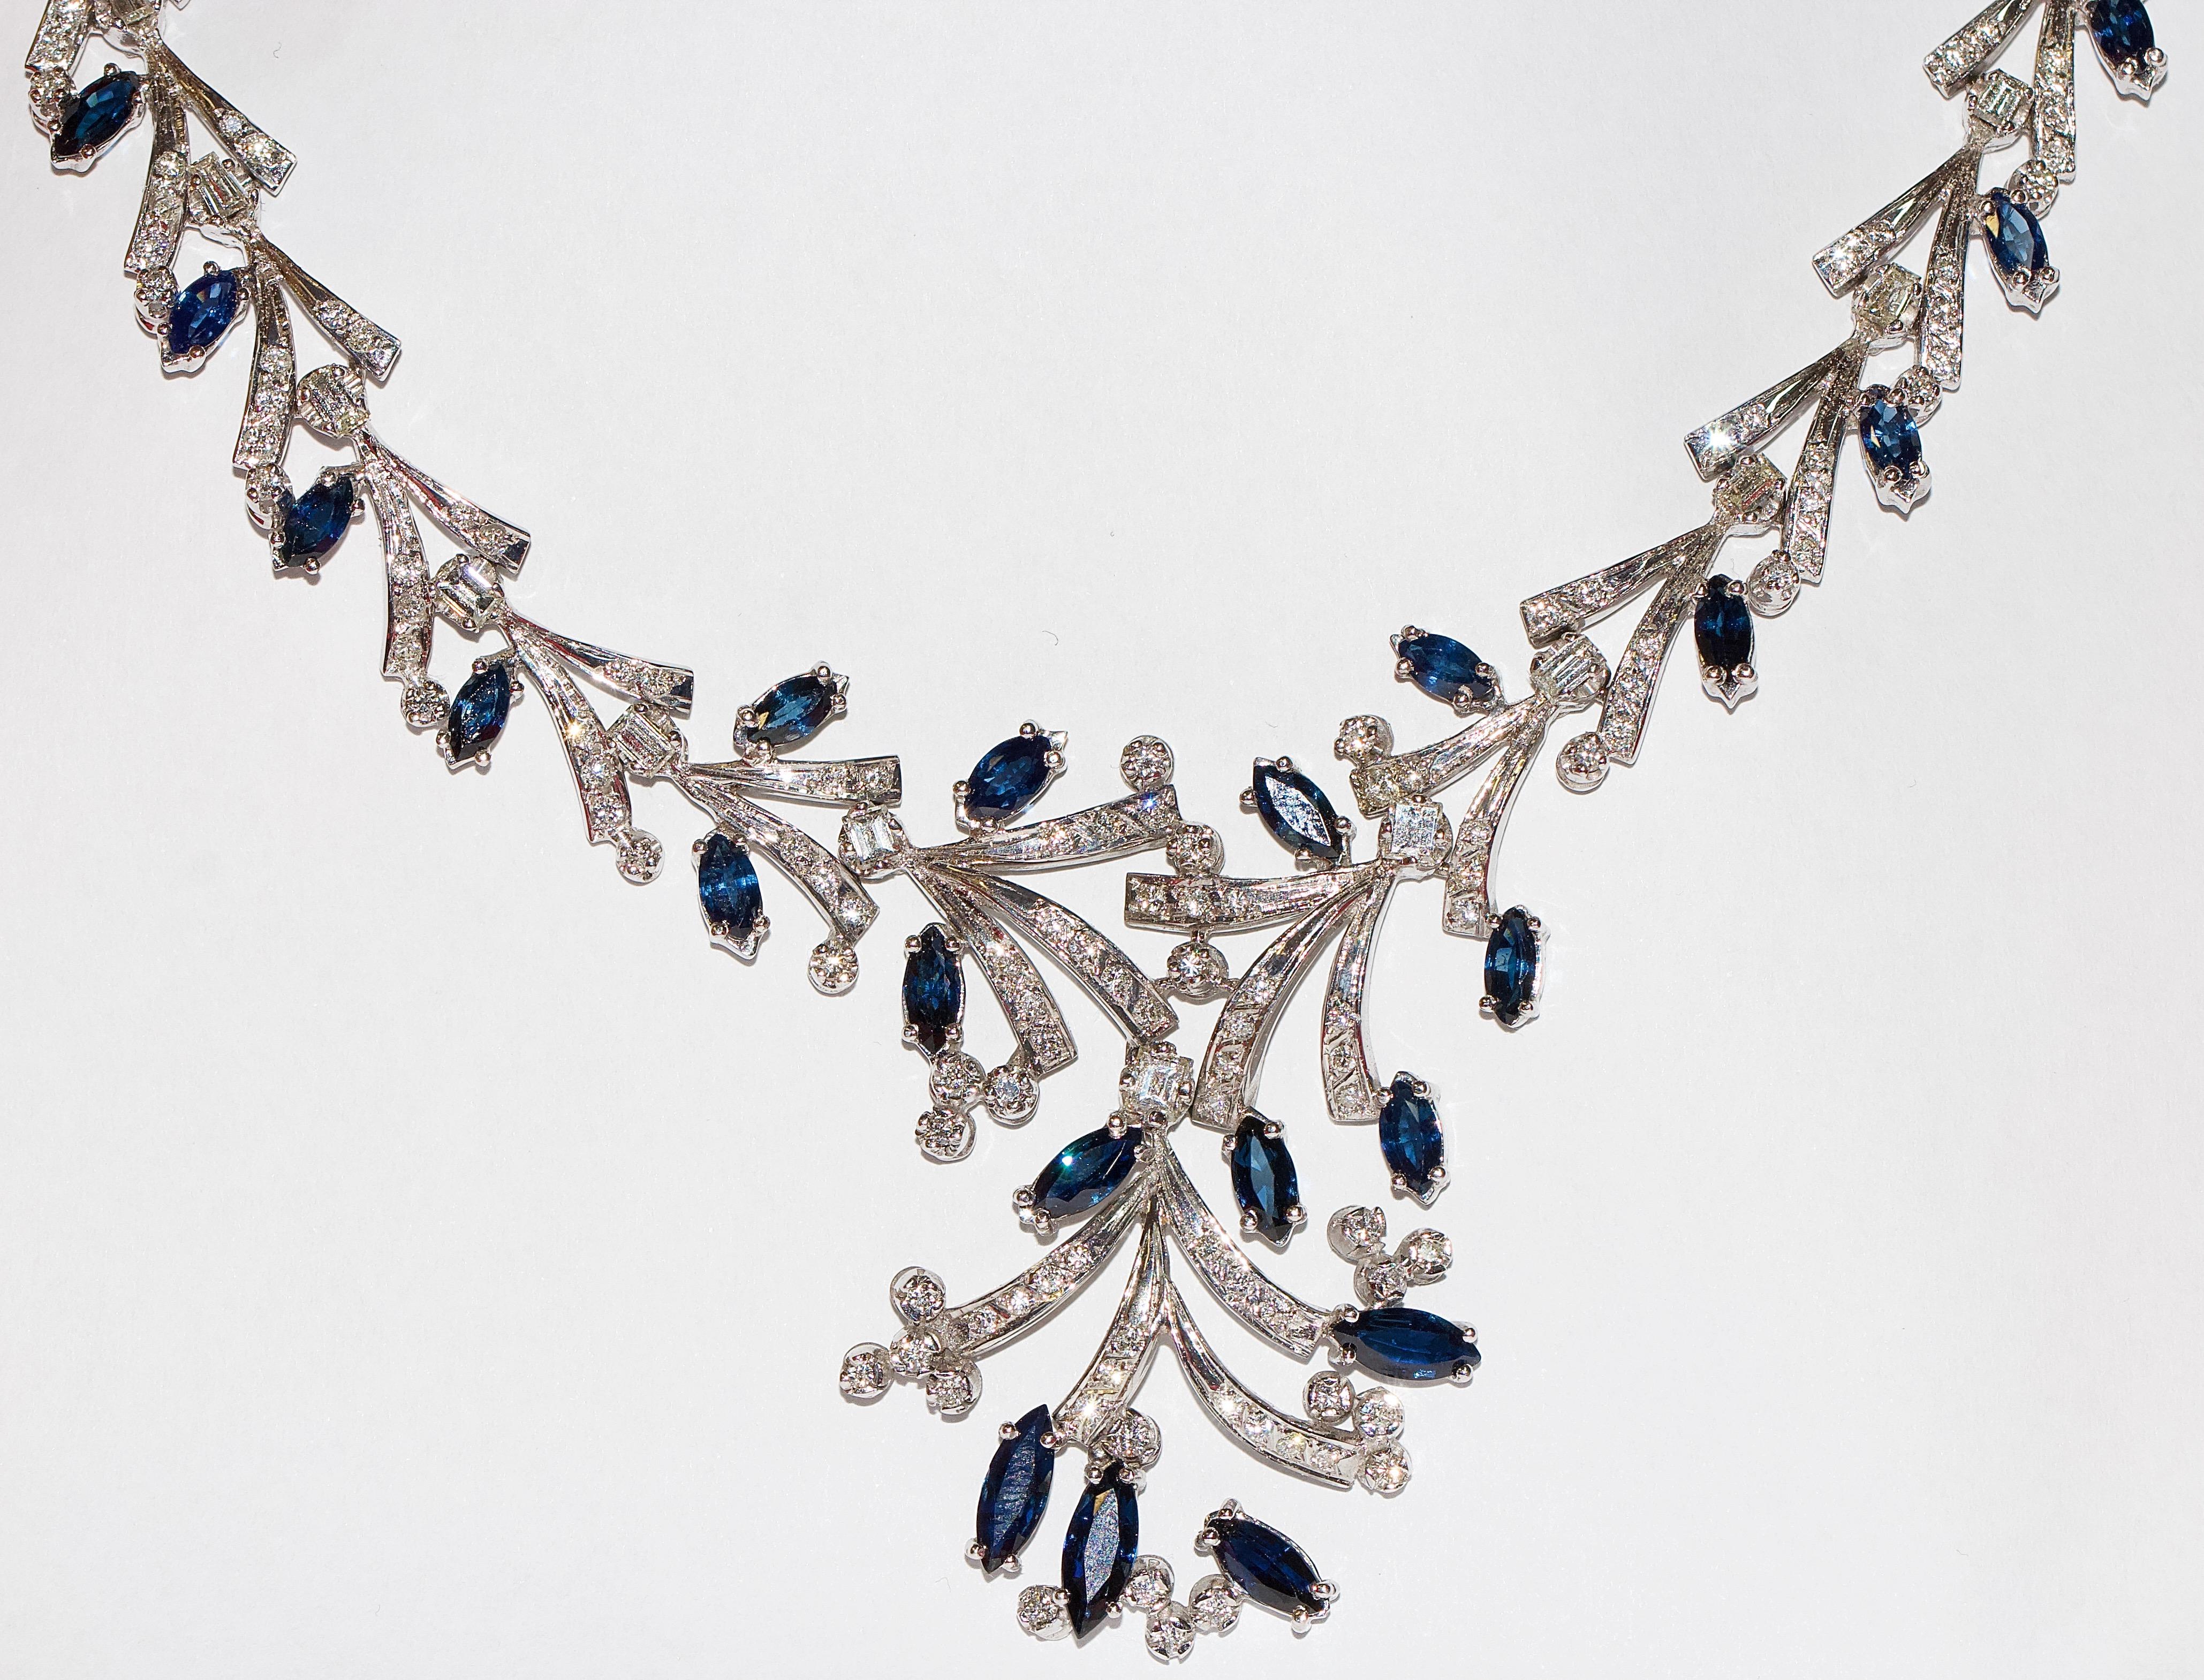 Magnifique collier pour femme certifié en or blanc 14 carats.

Le collier est serti de 265 petits diamants d'un poids total d'environ 6,6 carats.
Qualité : Wesselton à Top Wesselton, VVS à VS.

En outre, elle est sertie de 36 diamants de taille